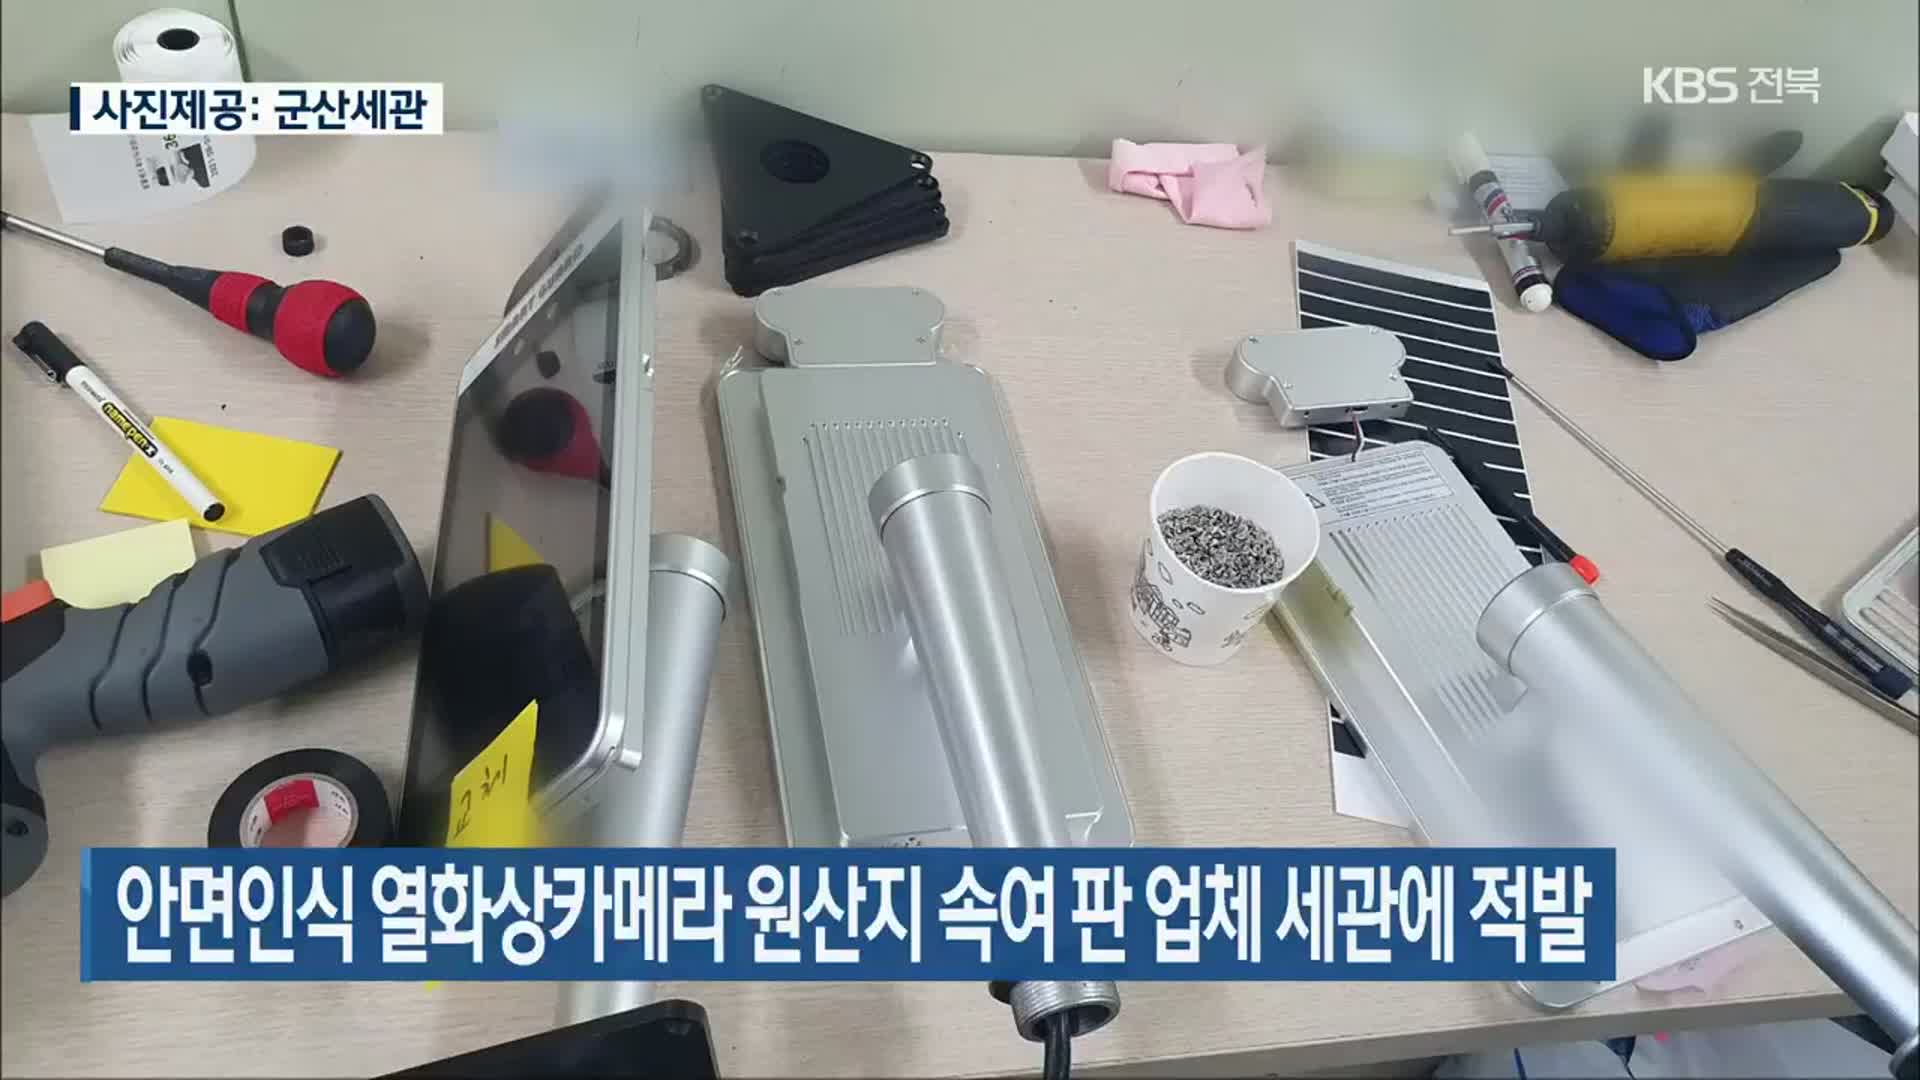 안면인식 열화상카메라 원산지 속여 판 업체 세관에 적발